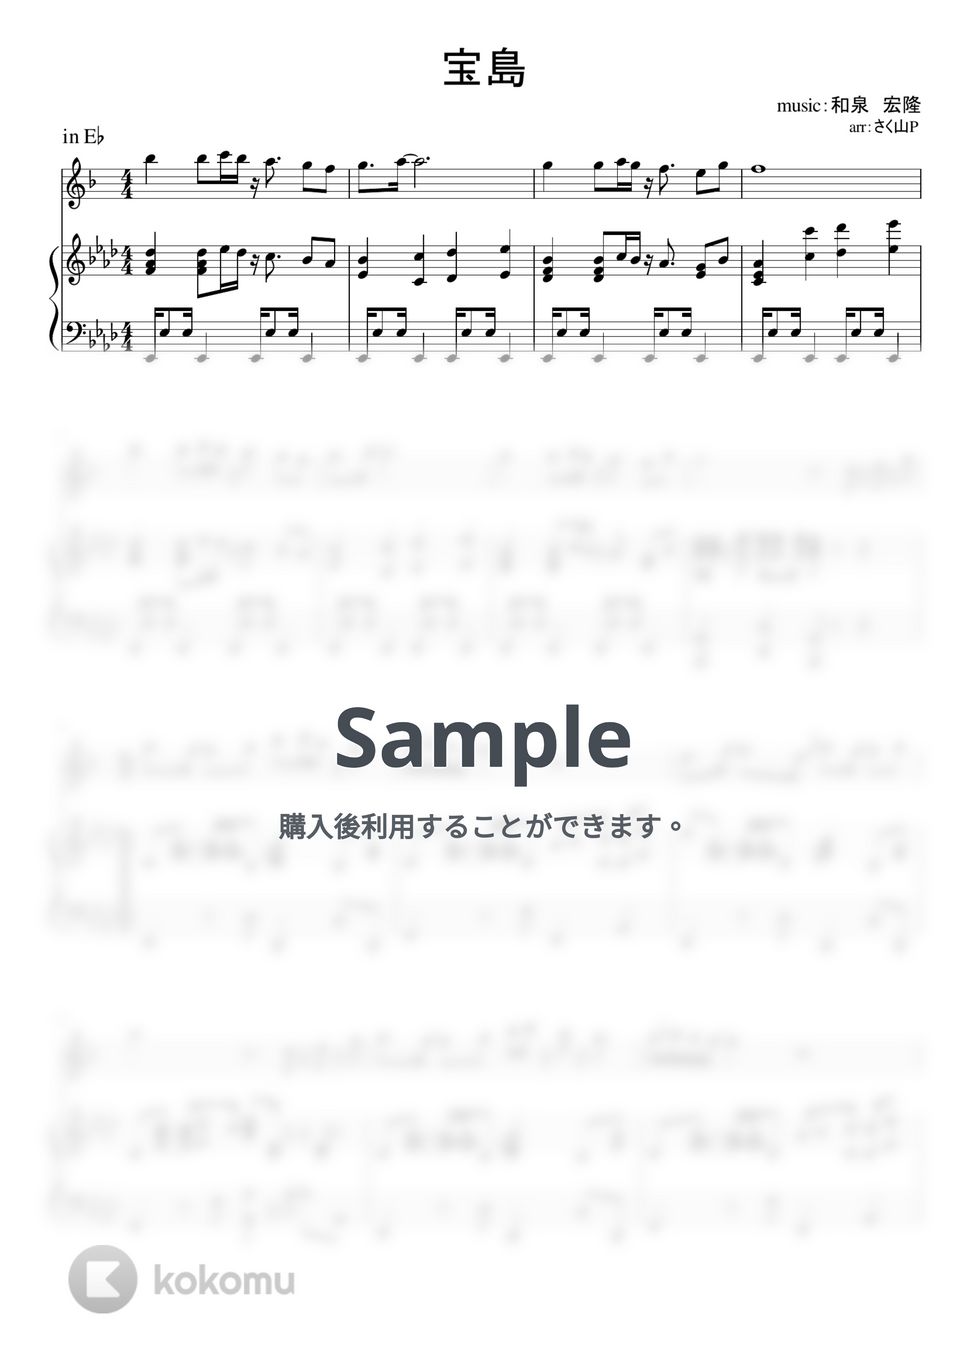 T-SQUARE - 宝島 (ピアノ伴奏 / 吹奏楽バージョン / inE♭) by さく山P